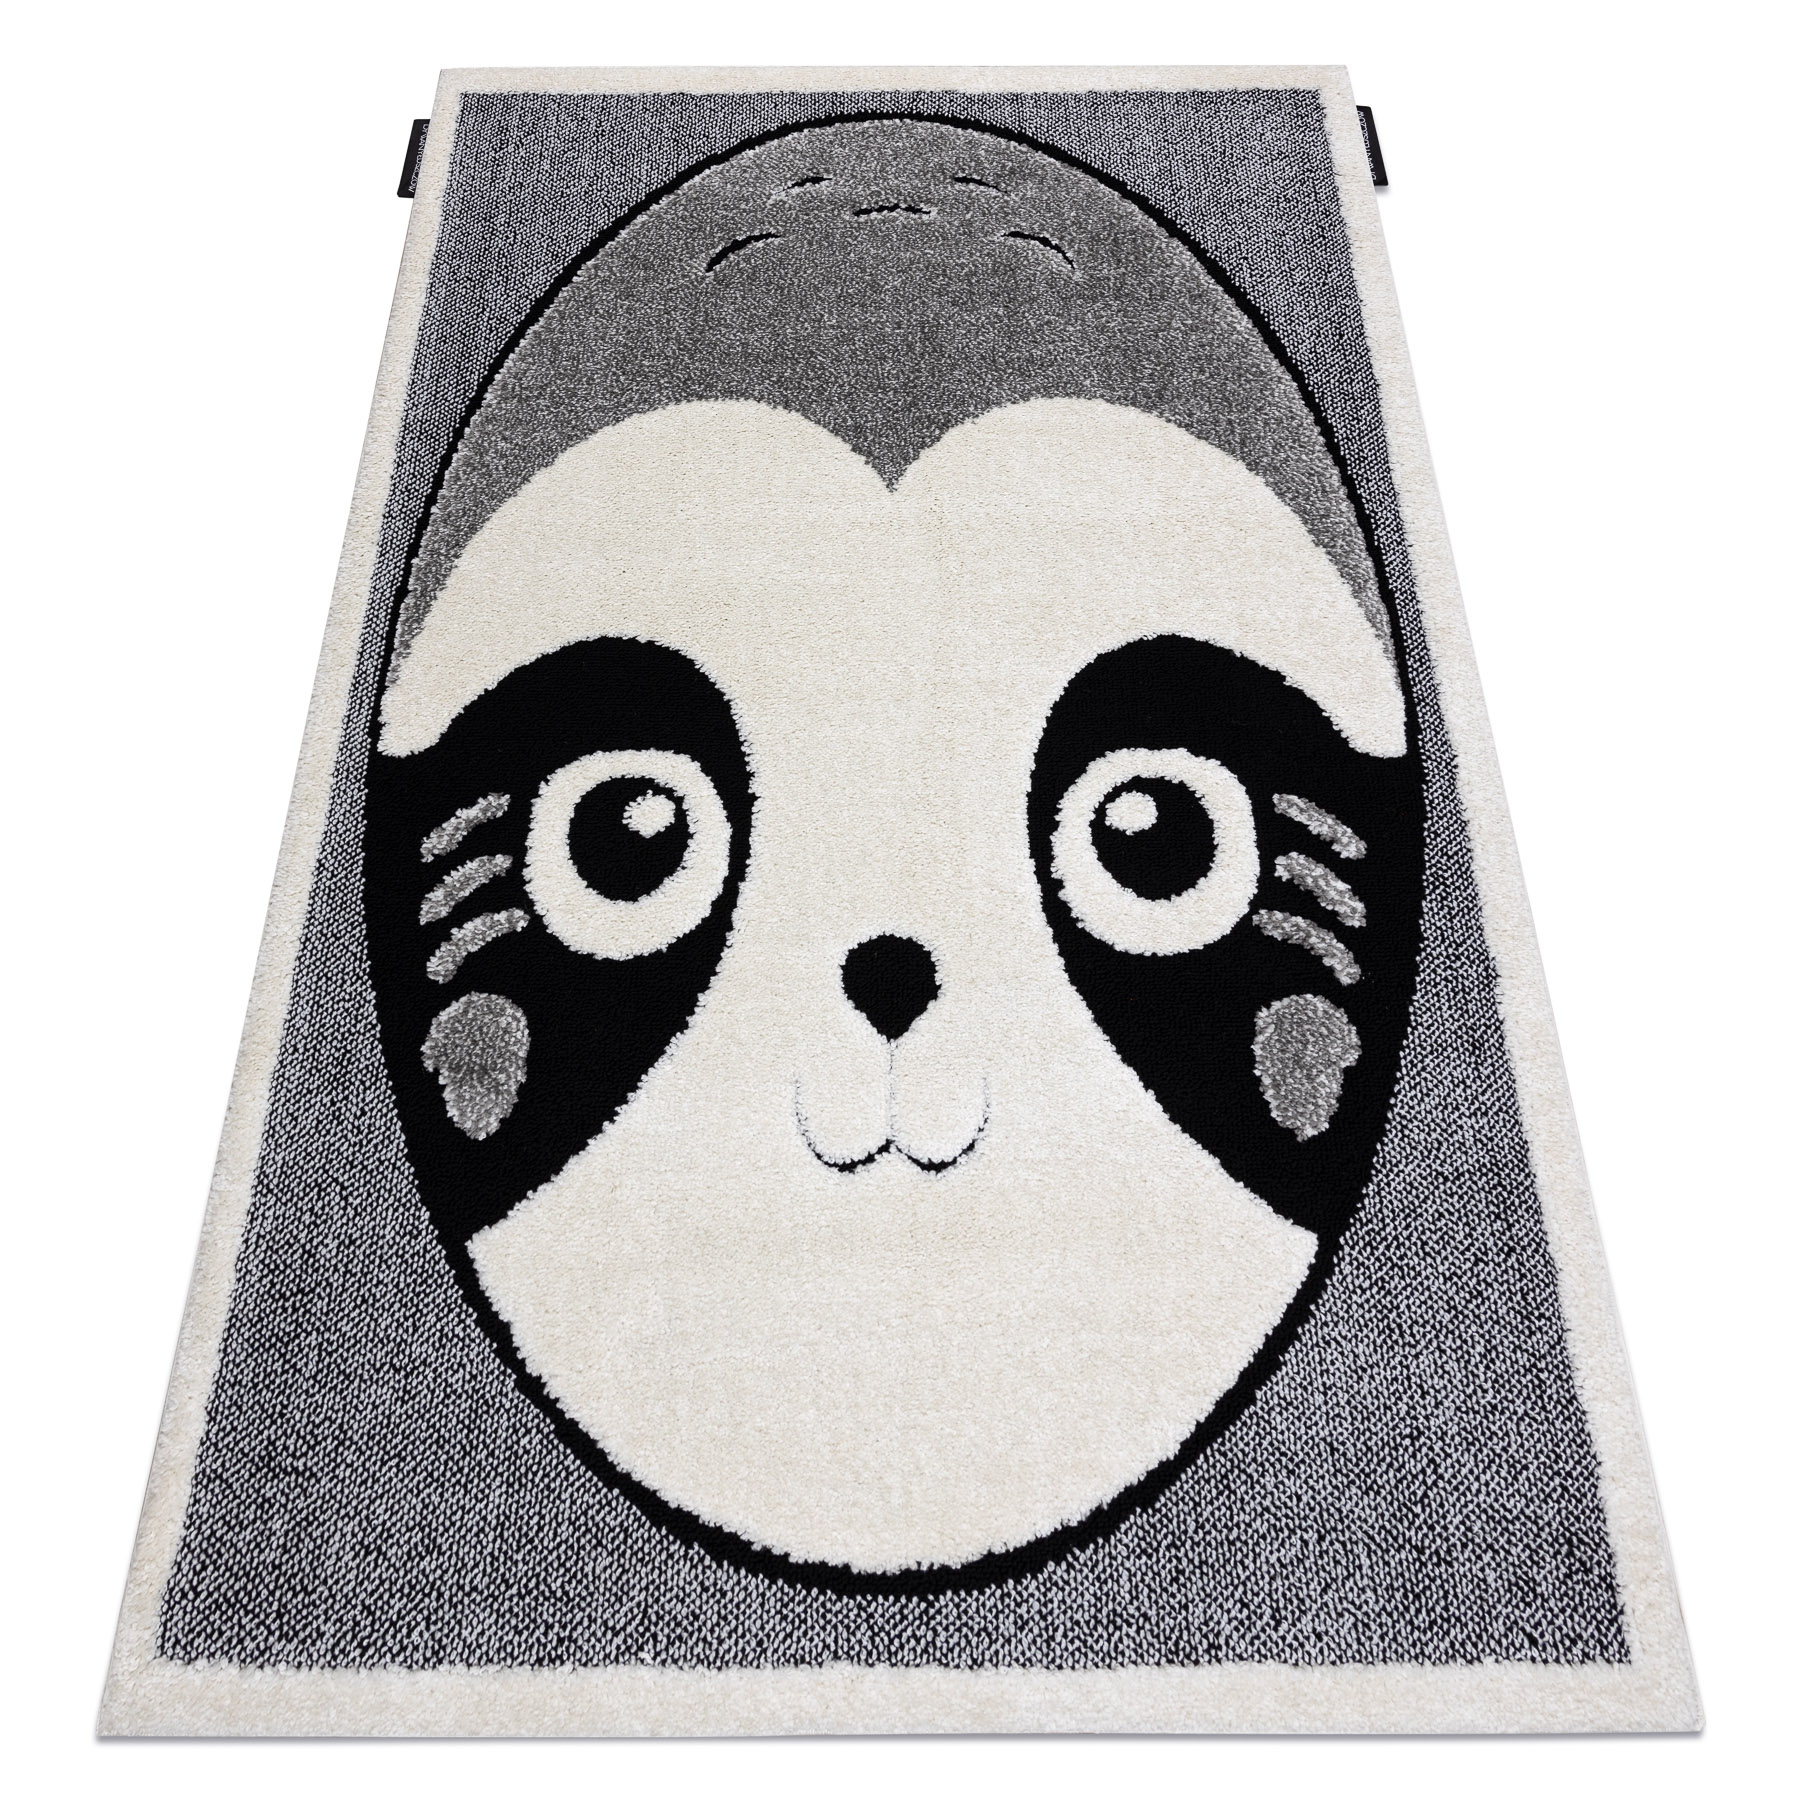 Jimri Alfombra para habitación infantil, alfombra para habitación infantil,  alfombra infantil, oso, panda (crema-beis, tamaño: 80 x 150 cm)